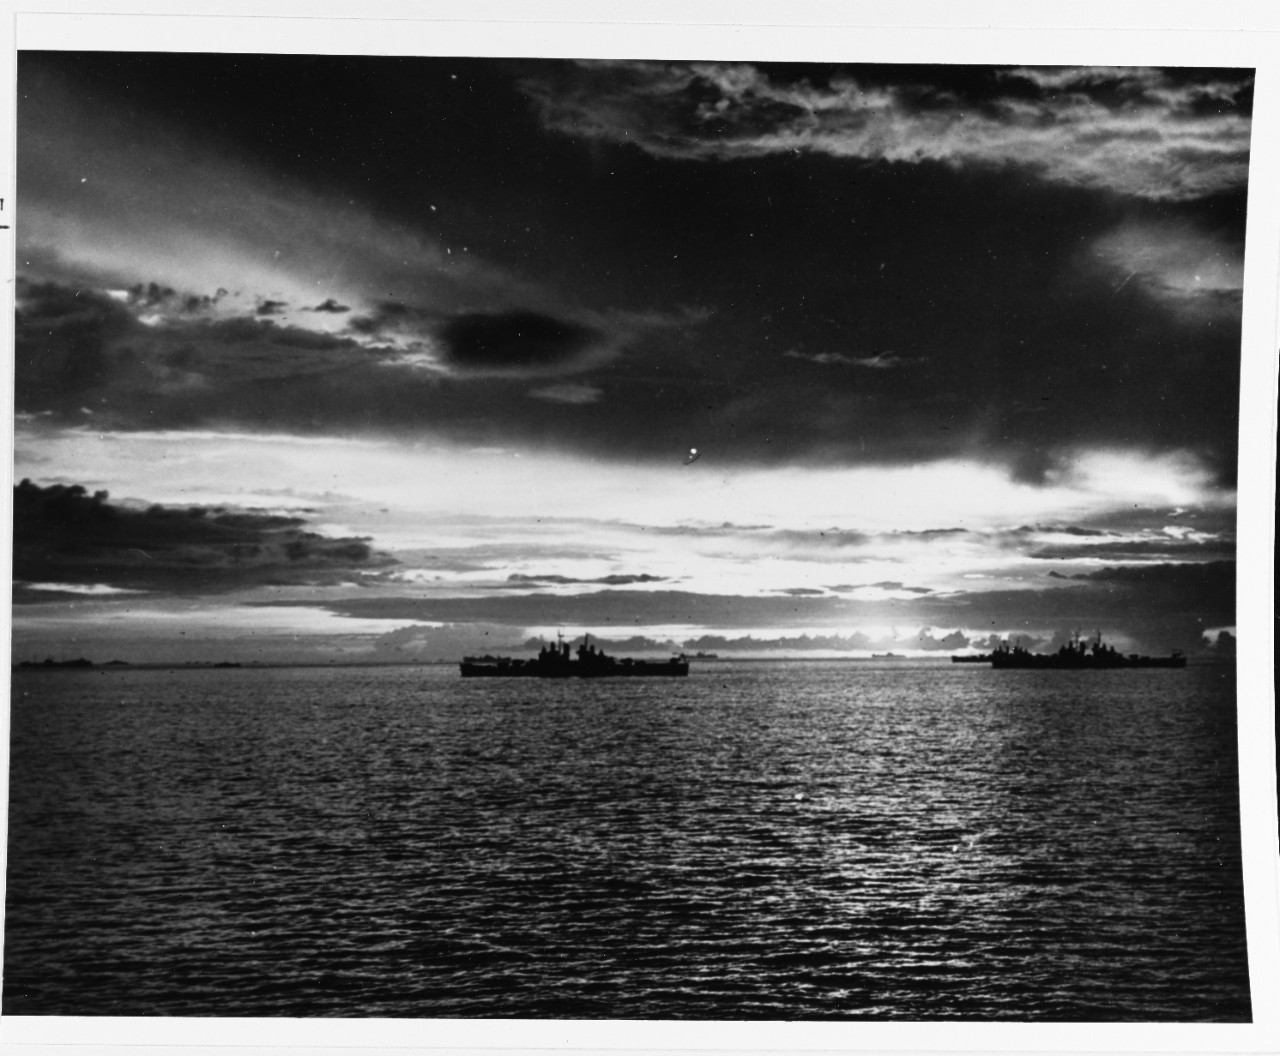 "Sunset on the Sulu sea"